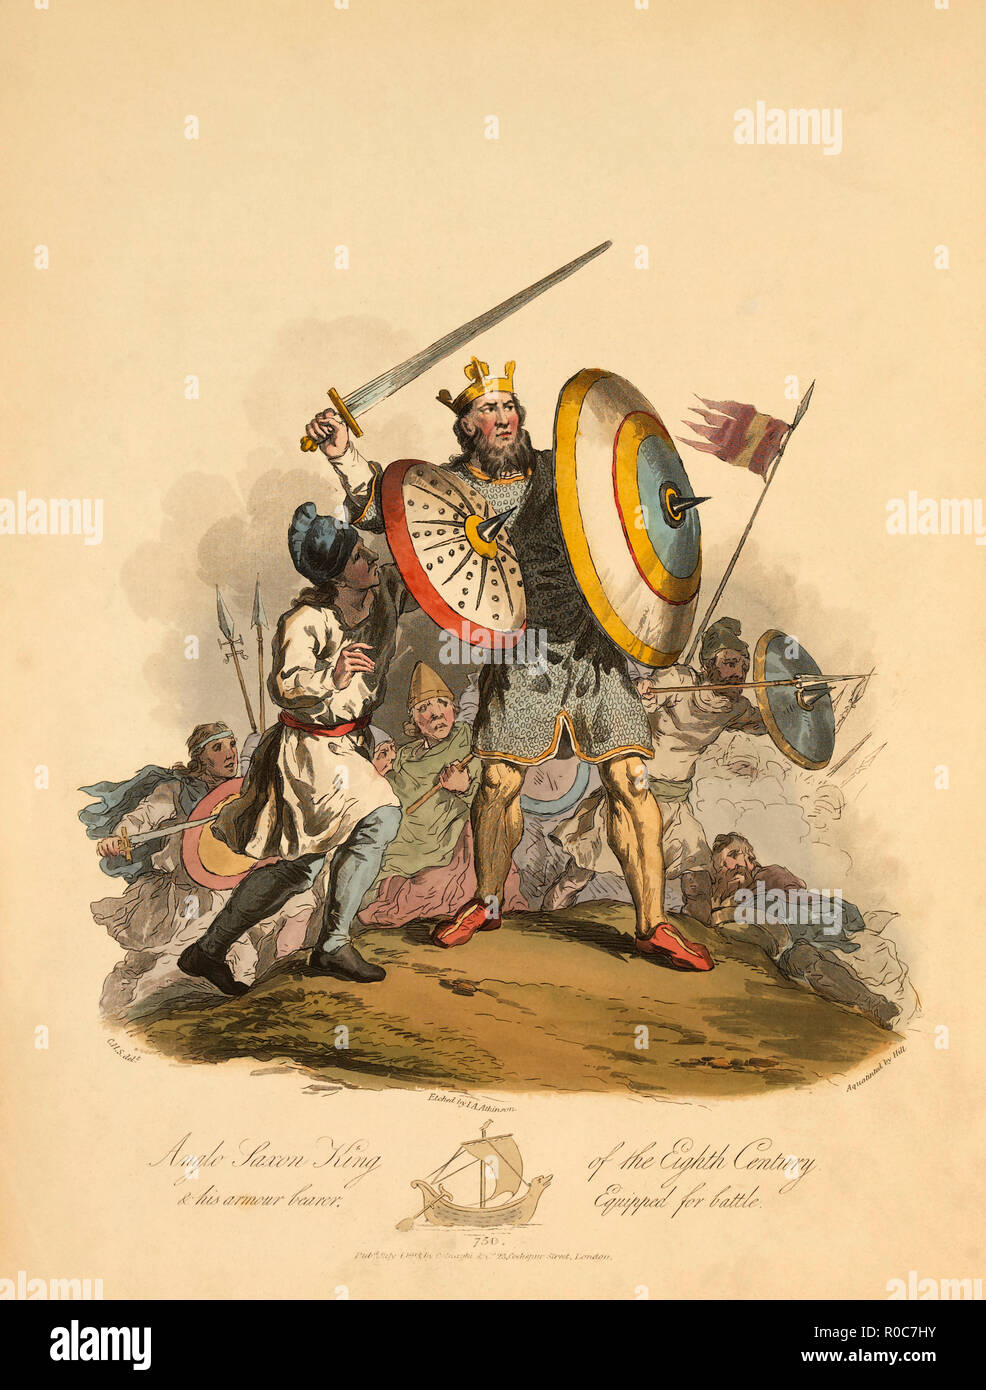 Le Roi anglo-saxon du huitième siècle et son porteur d'armes équipés pour la bataille, 750, gravure d'I.A. Atkinson, 1813 Banque D'Images